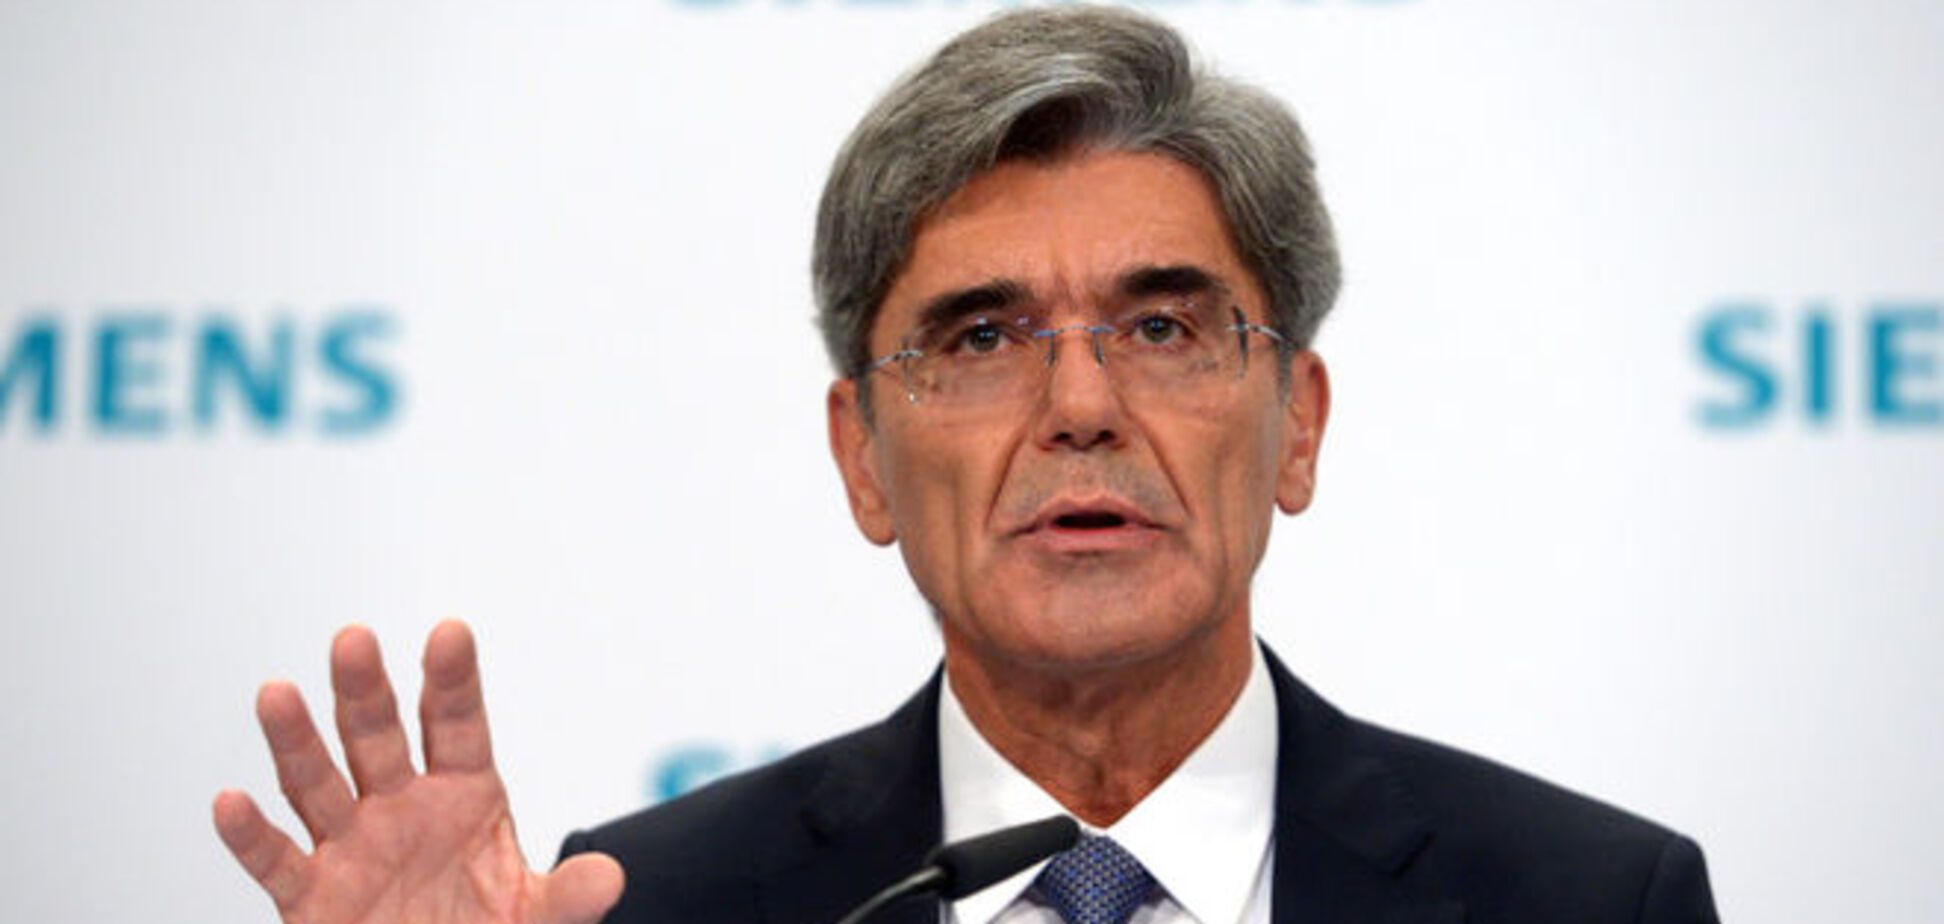 Siemens поддерживает санкции против России, несмотря на убытки